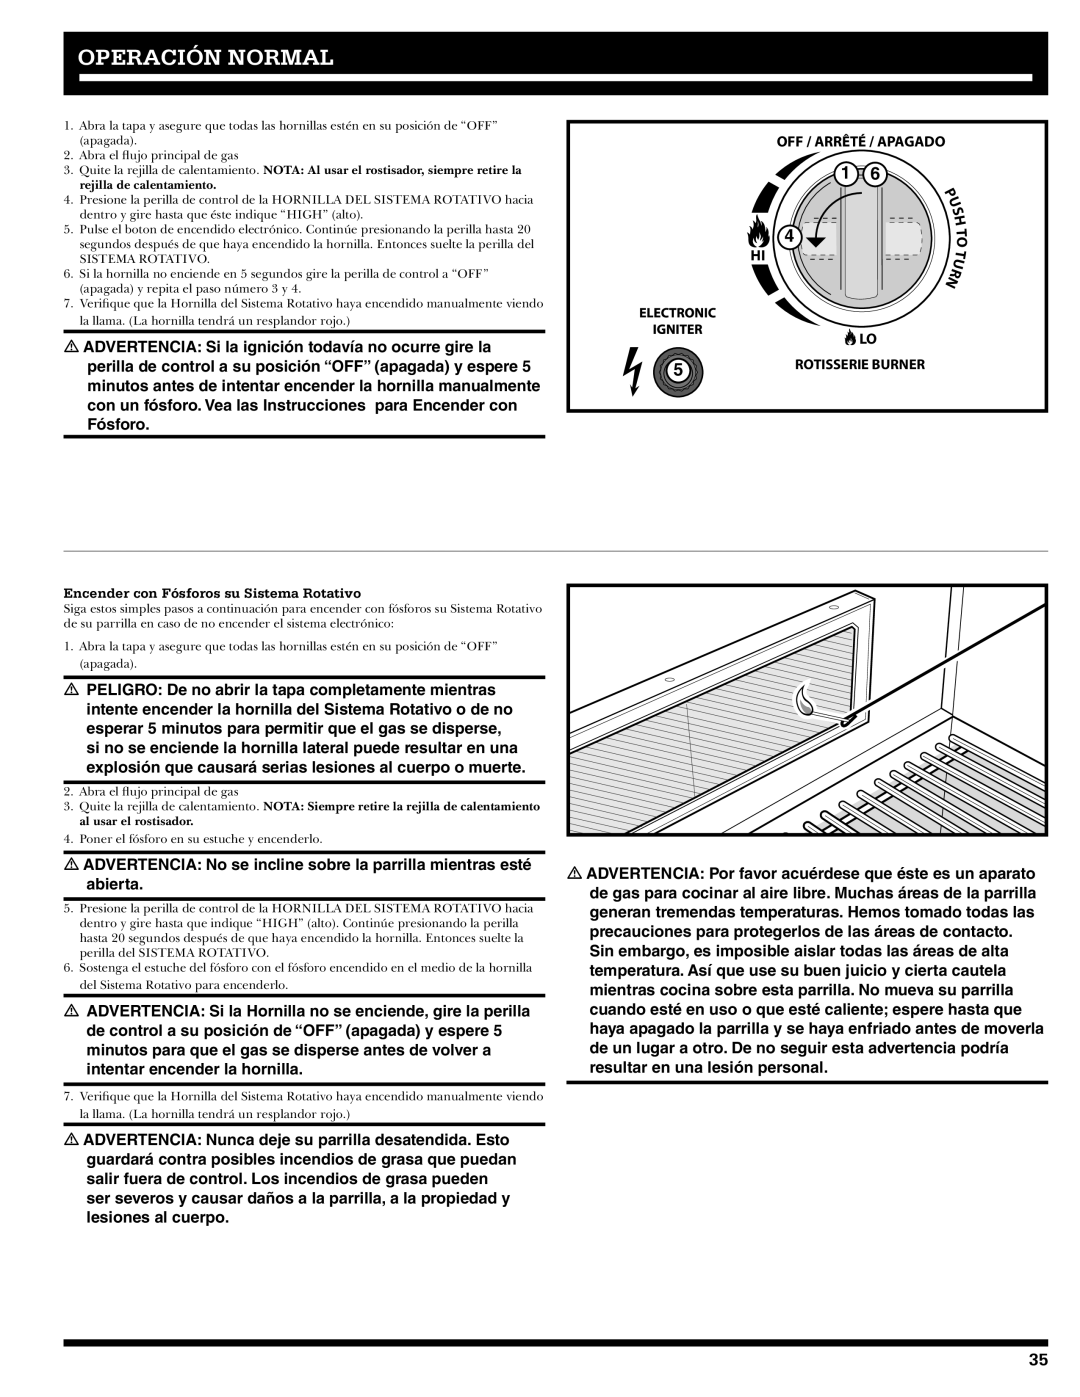 Ducane 2020805 owner manual Operación Normal, Encender con Fósforos su Sistema Rotativo 